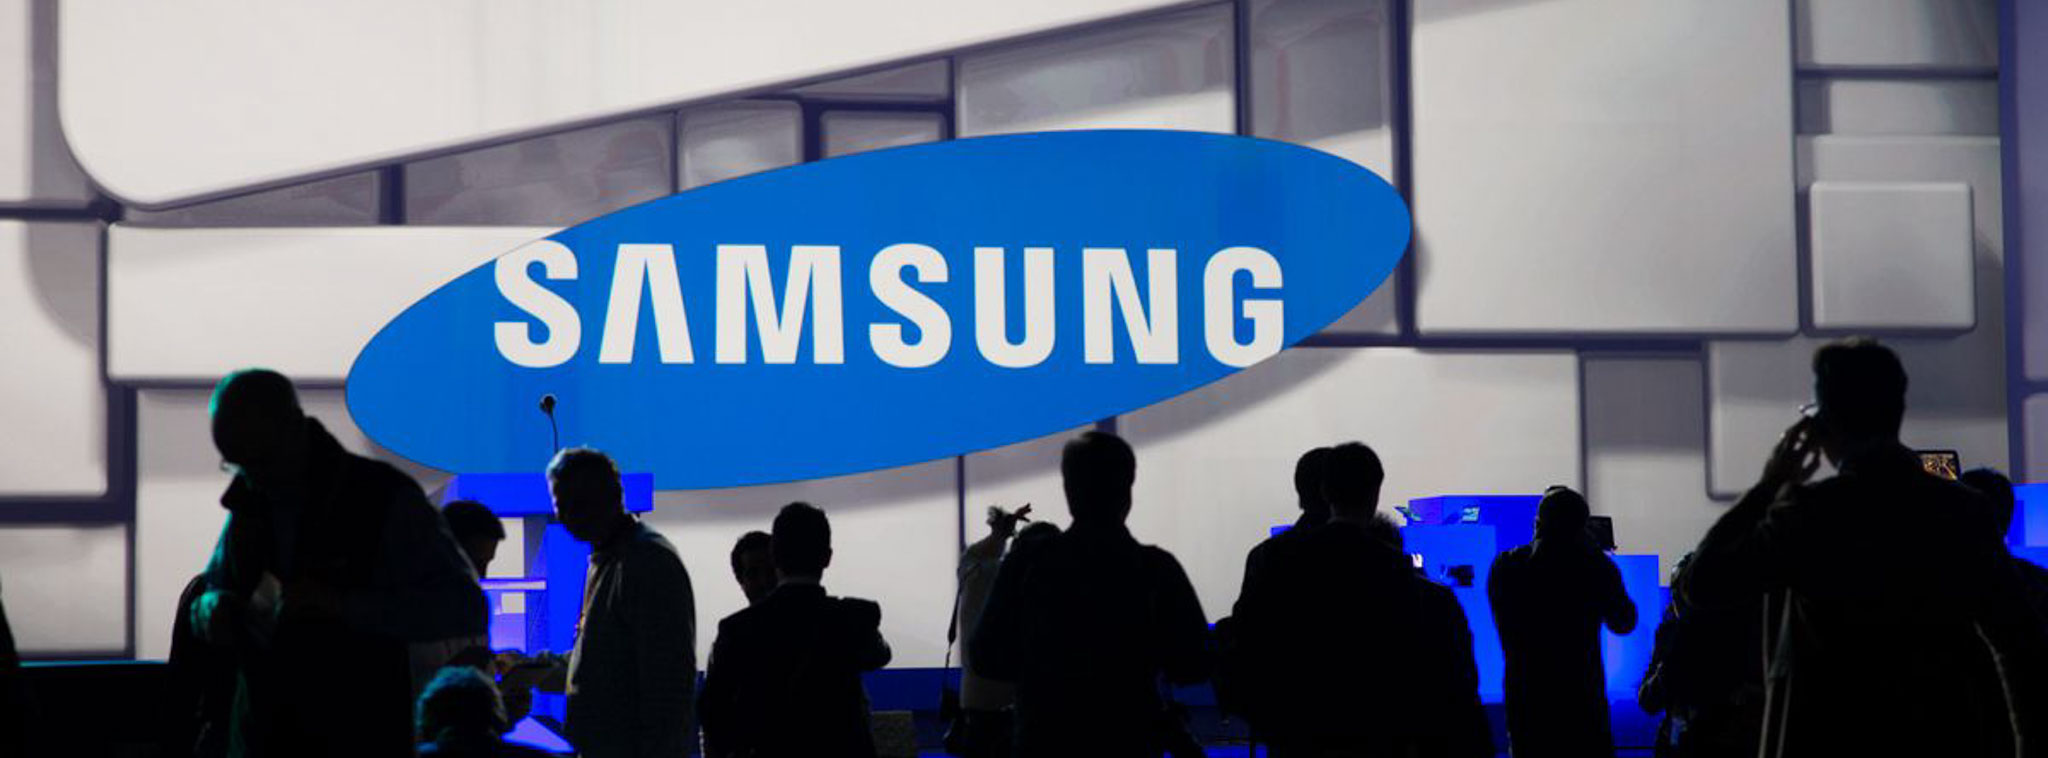 Samsung công bố lợi nhuận kỷ lục trong quý Q3/2017, giới thiệu 3 CEO mới